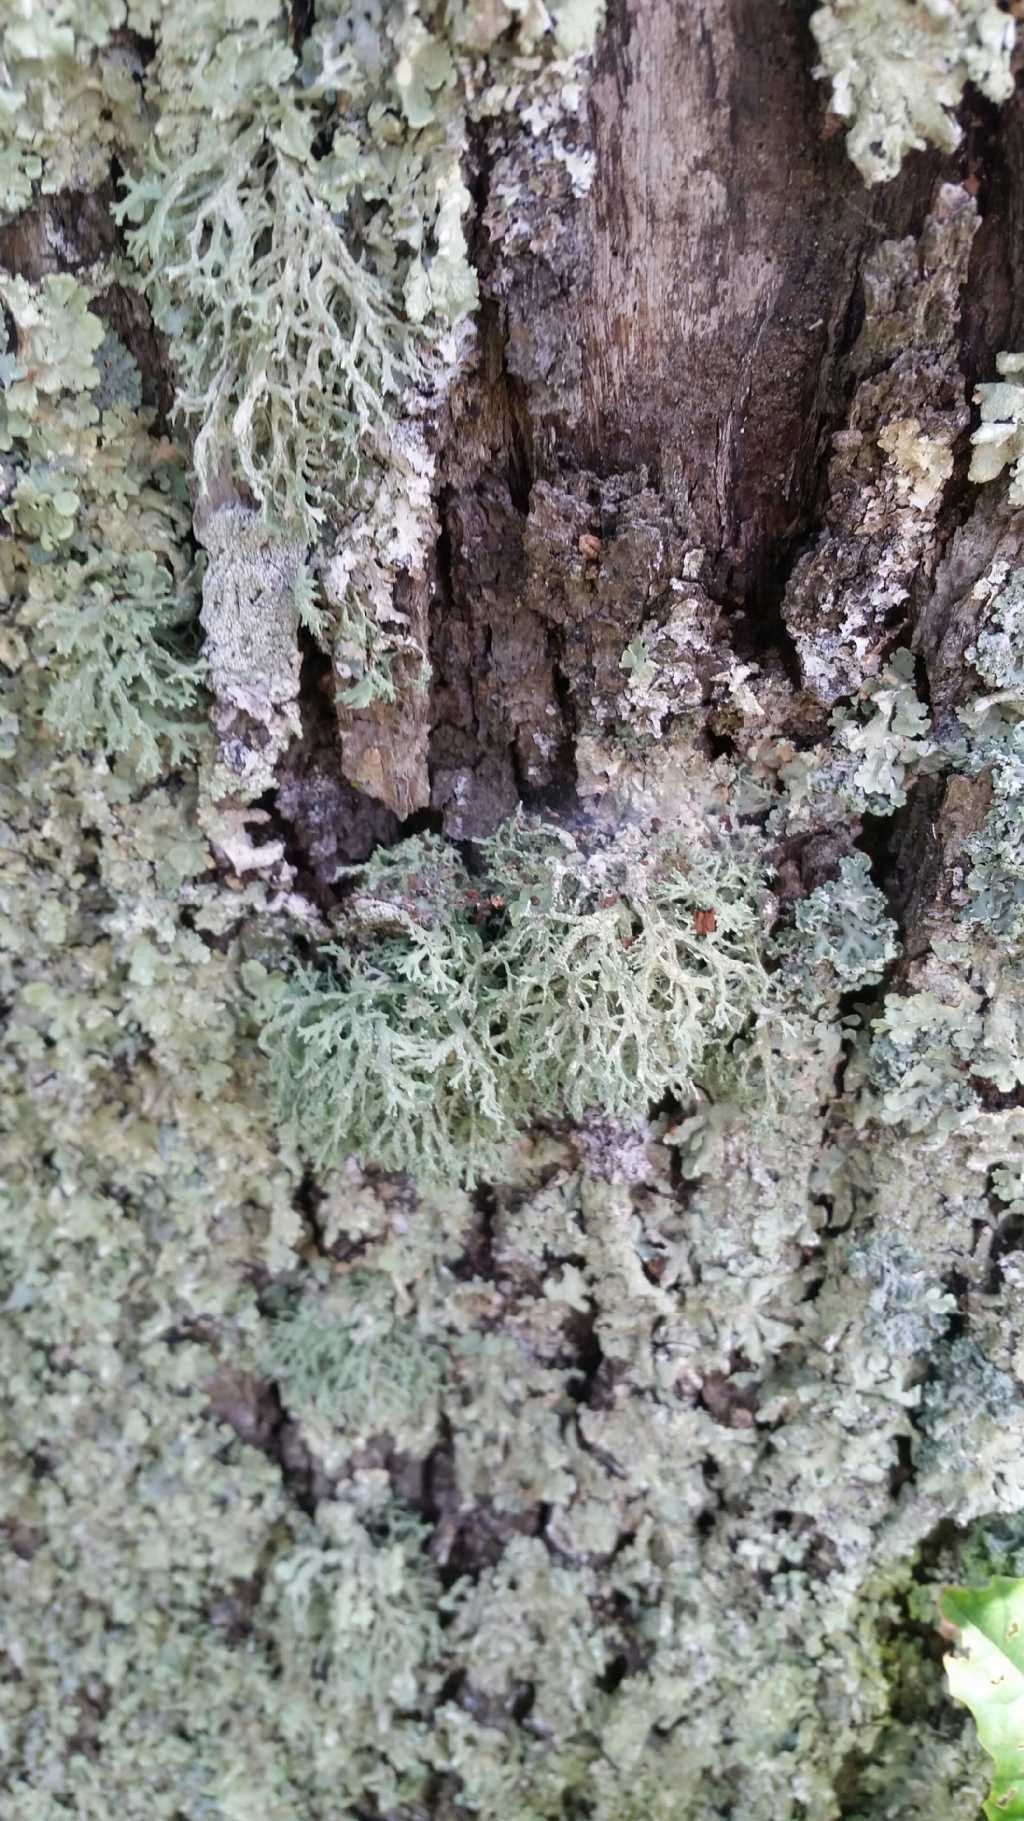 Che tipi di licheni sono?